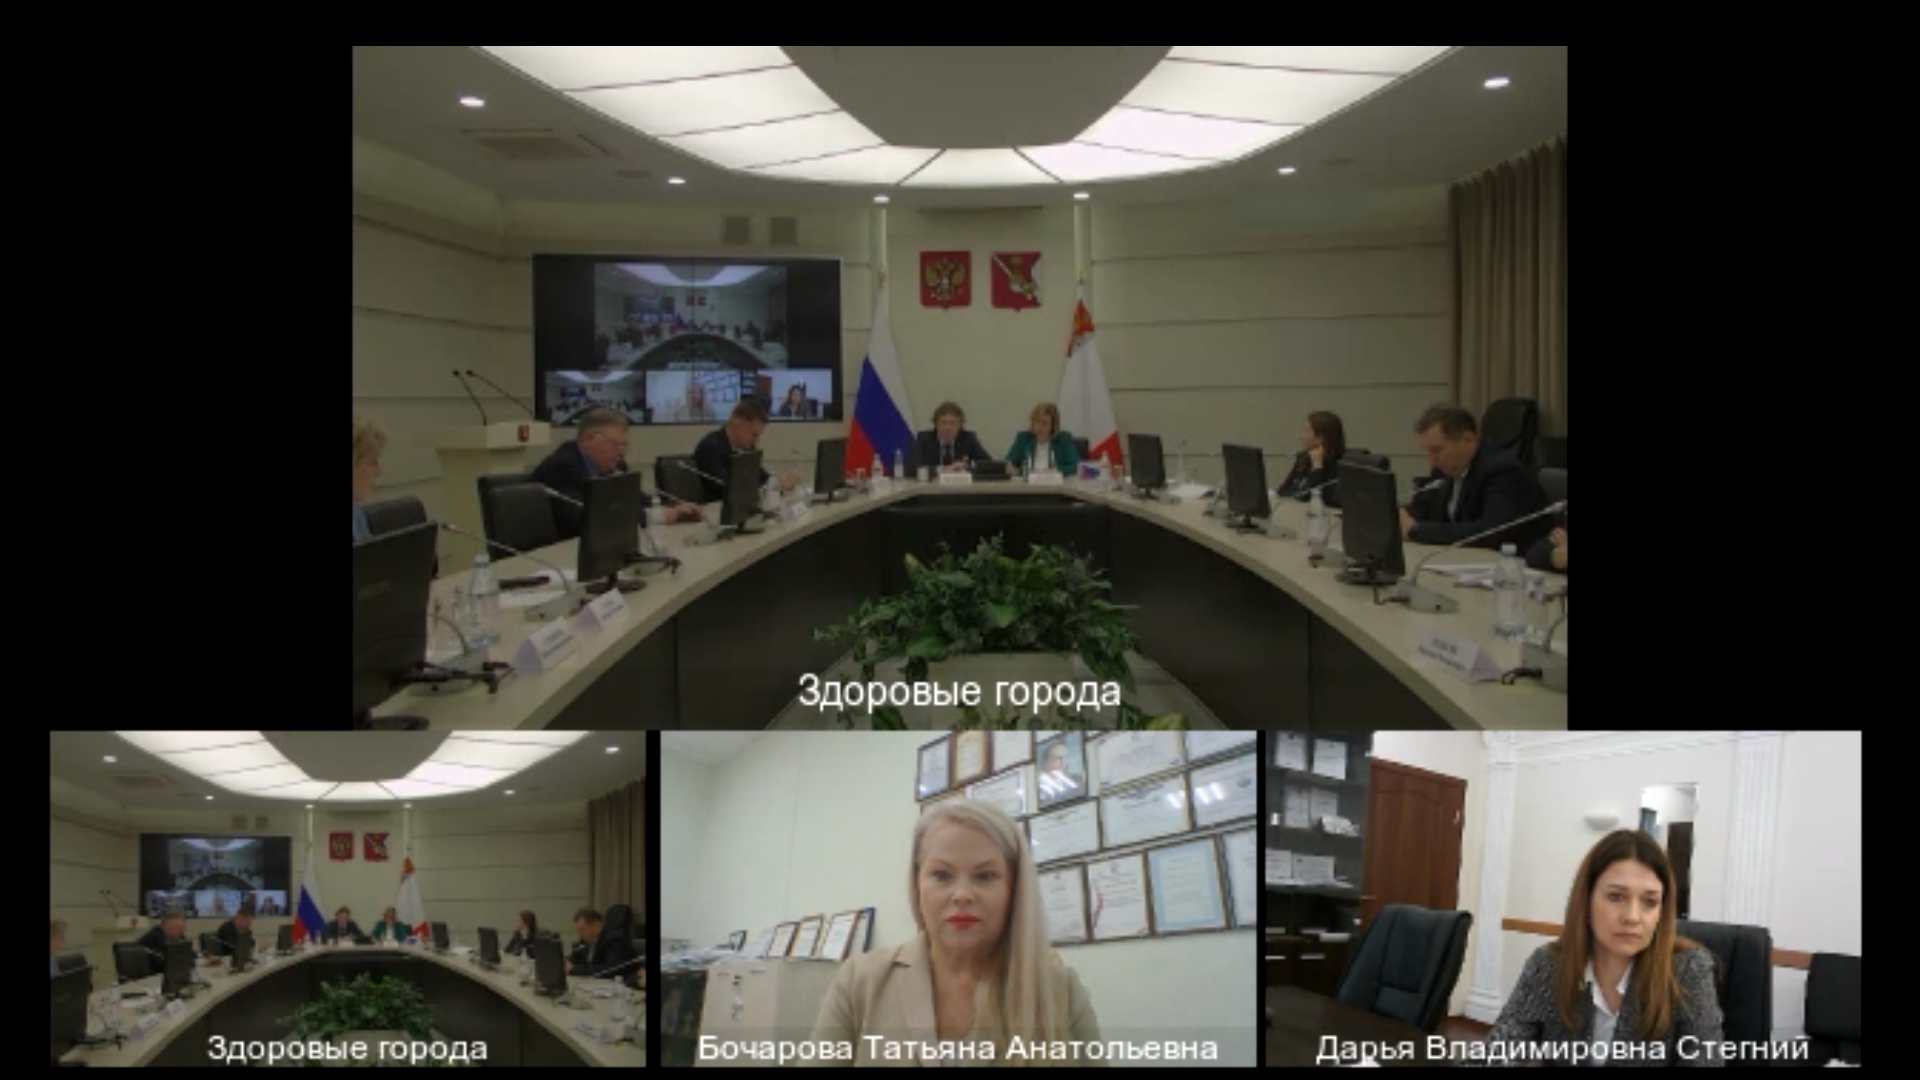 Всероссийский форум « Здоровые города: единство власти, бизнеса, науки и общества в достижении национальных целей развития» в формате видеоконференции.